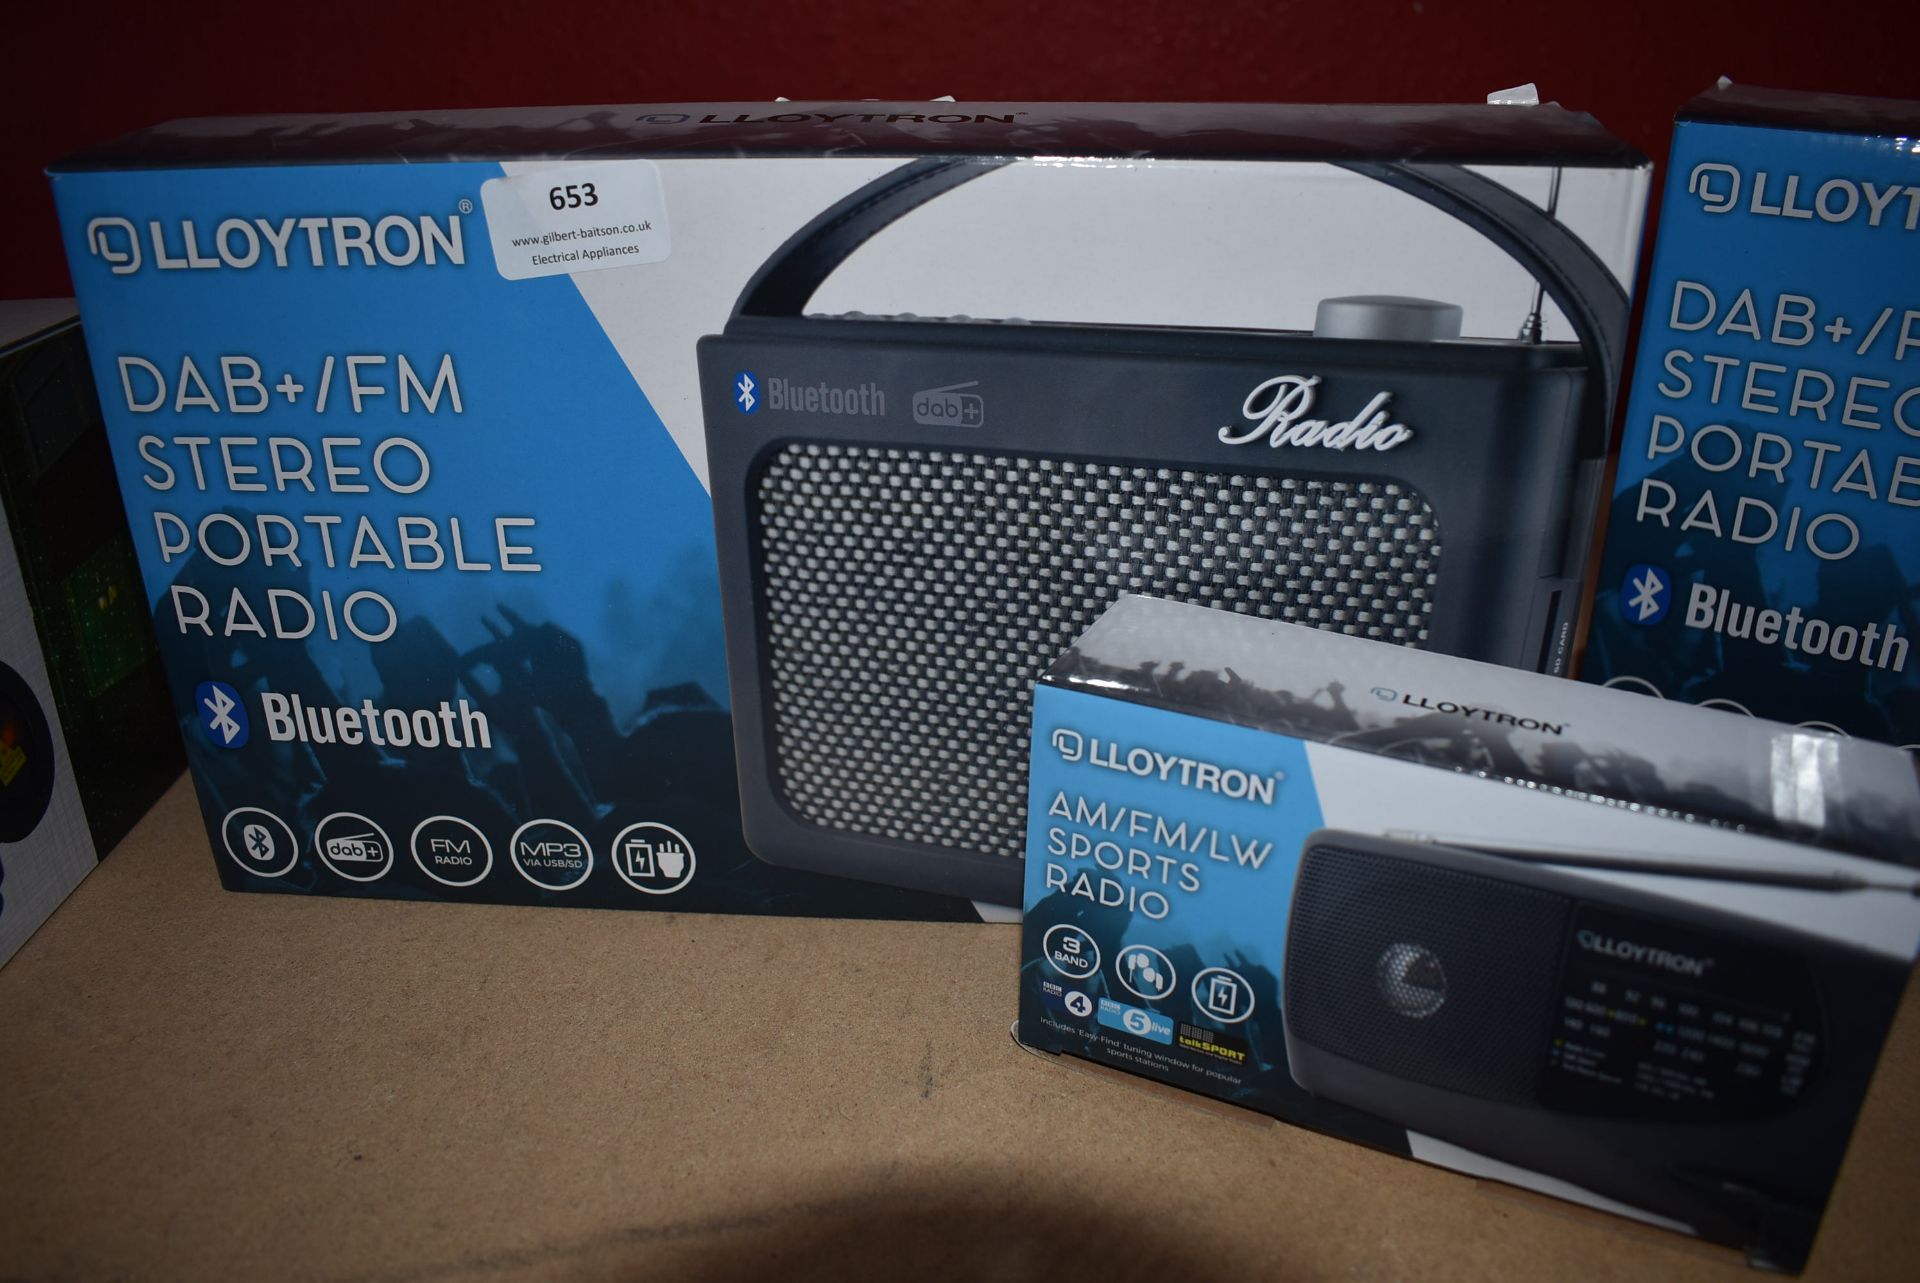 *Lloytron Stereo Portable Bluetooth Radio and a Lloytron AM/FM/LW Sports Radio